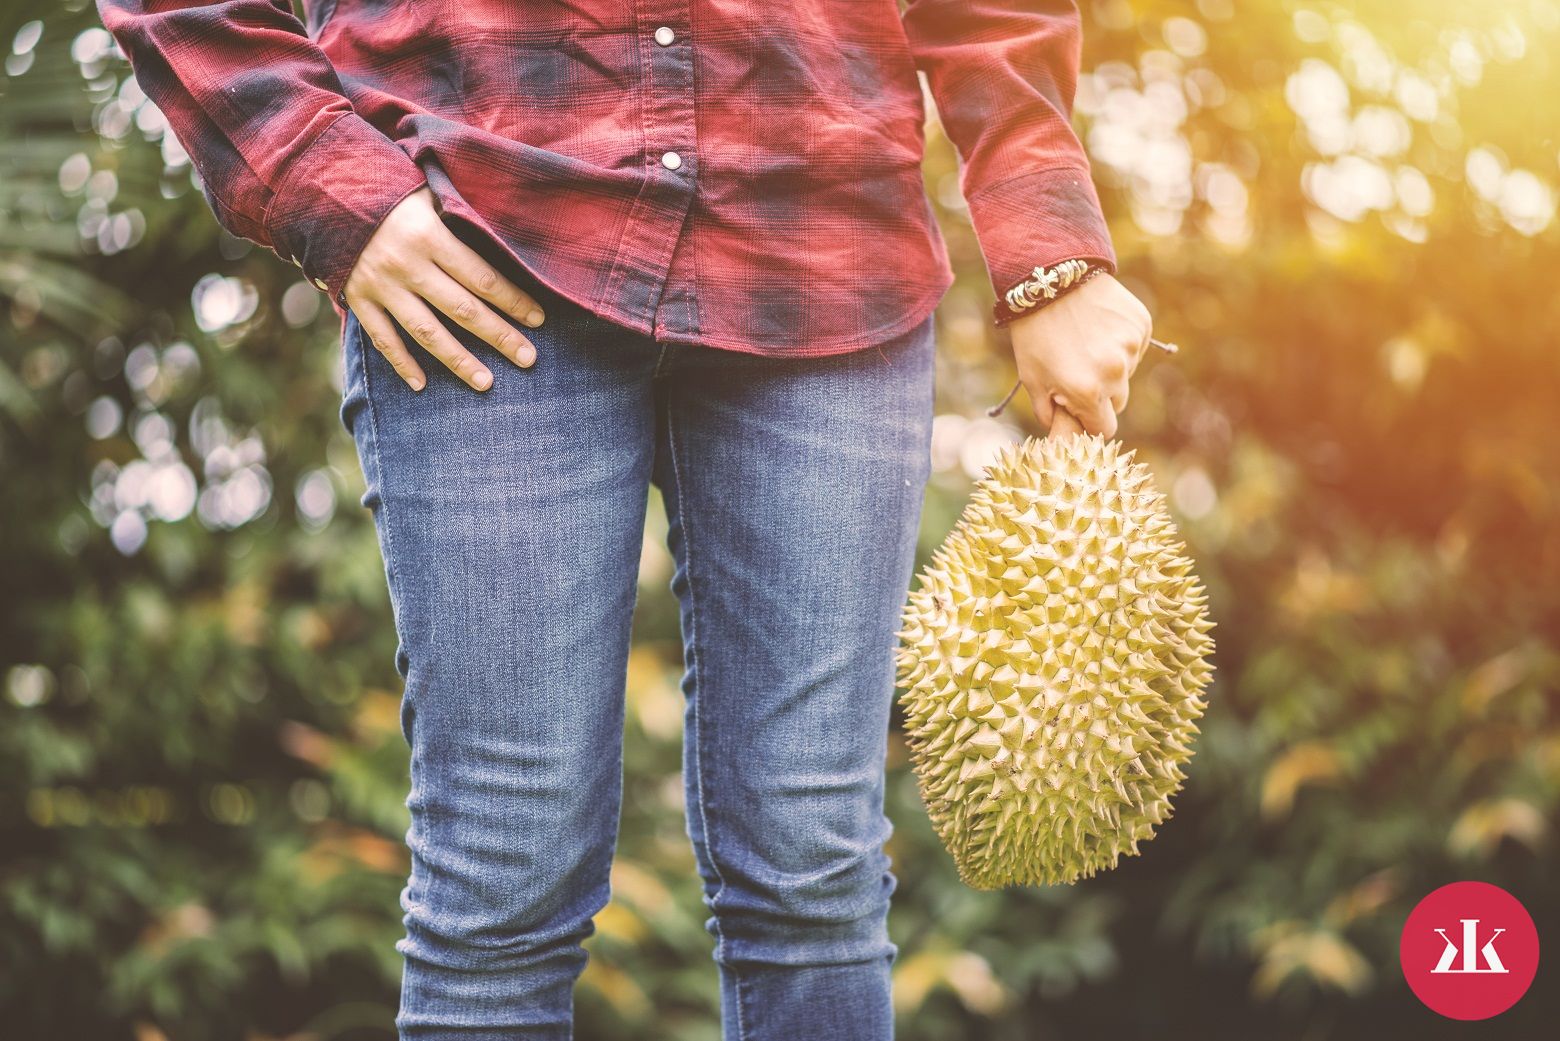 ako chutí durian